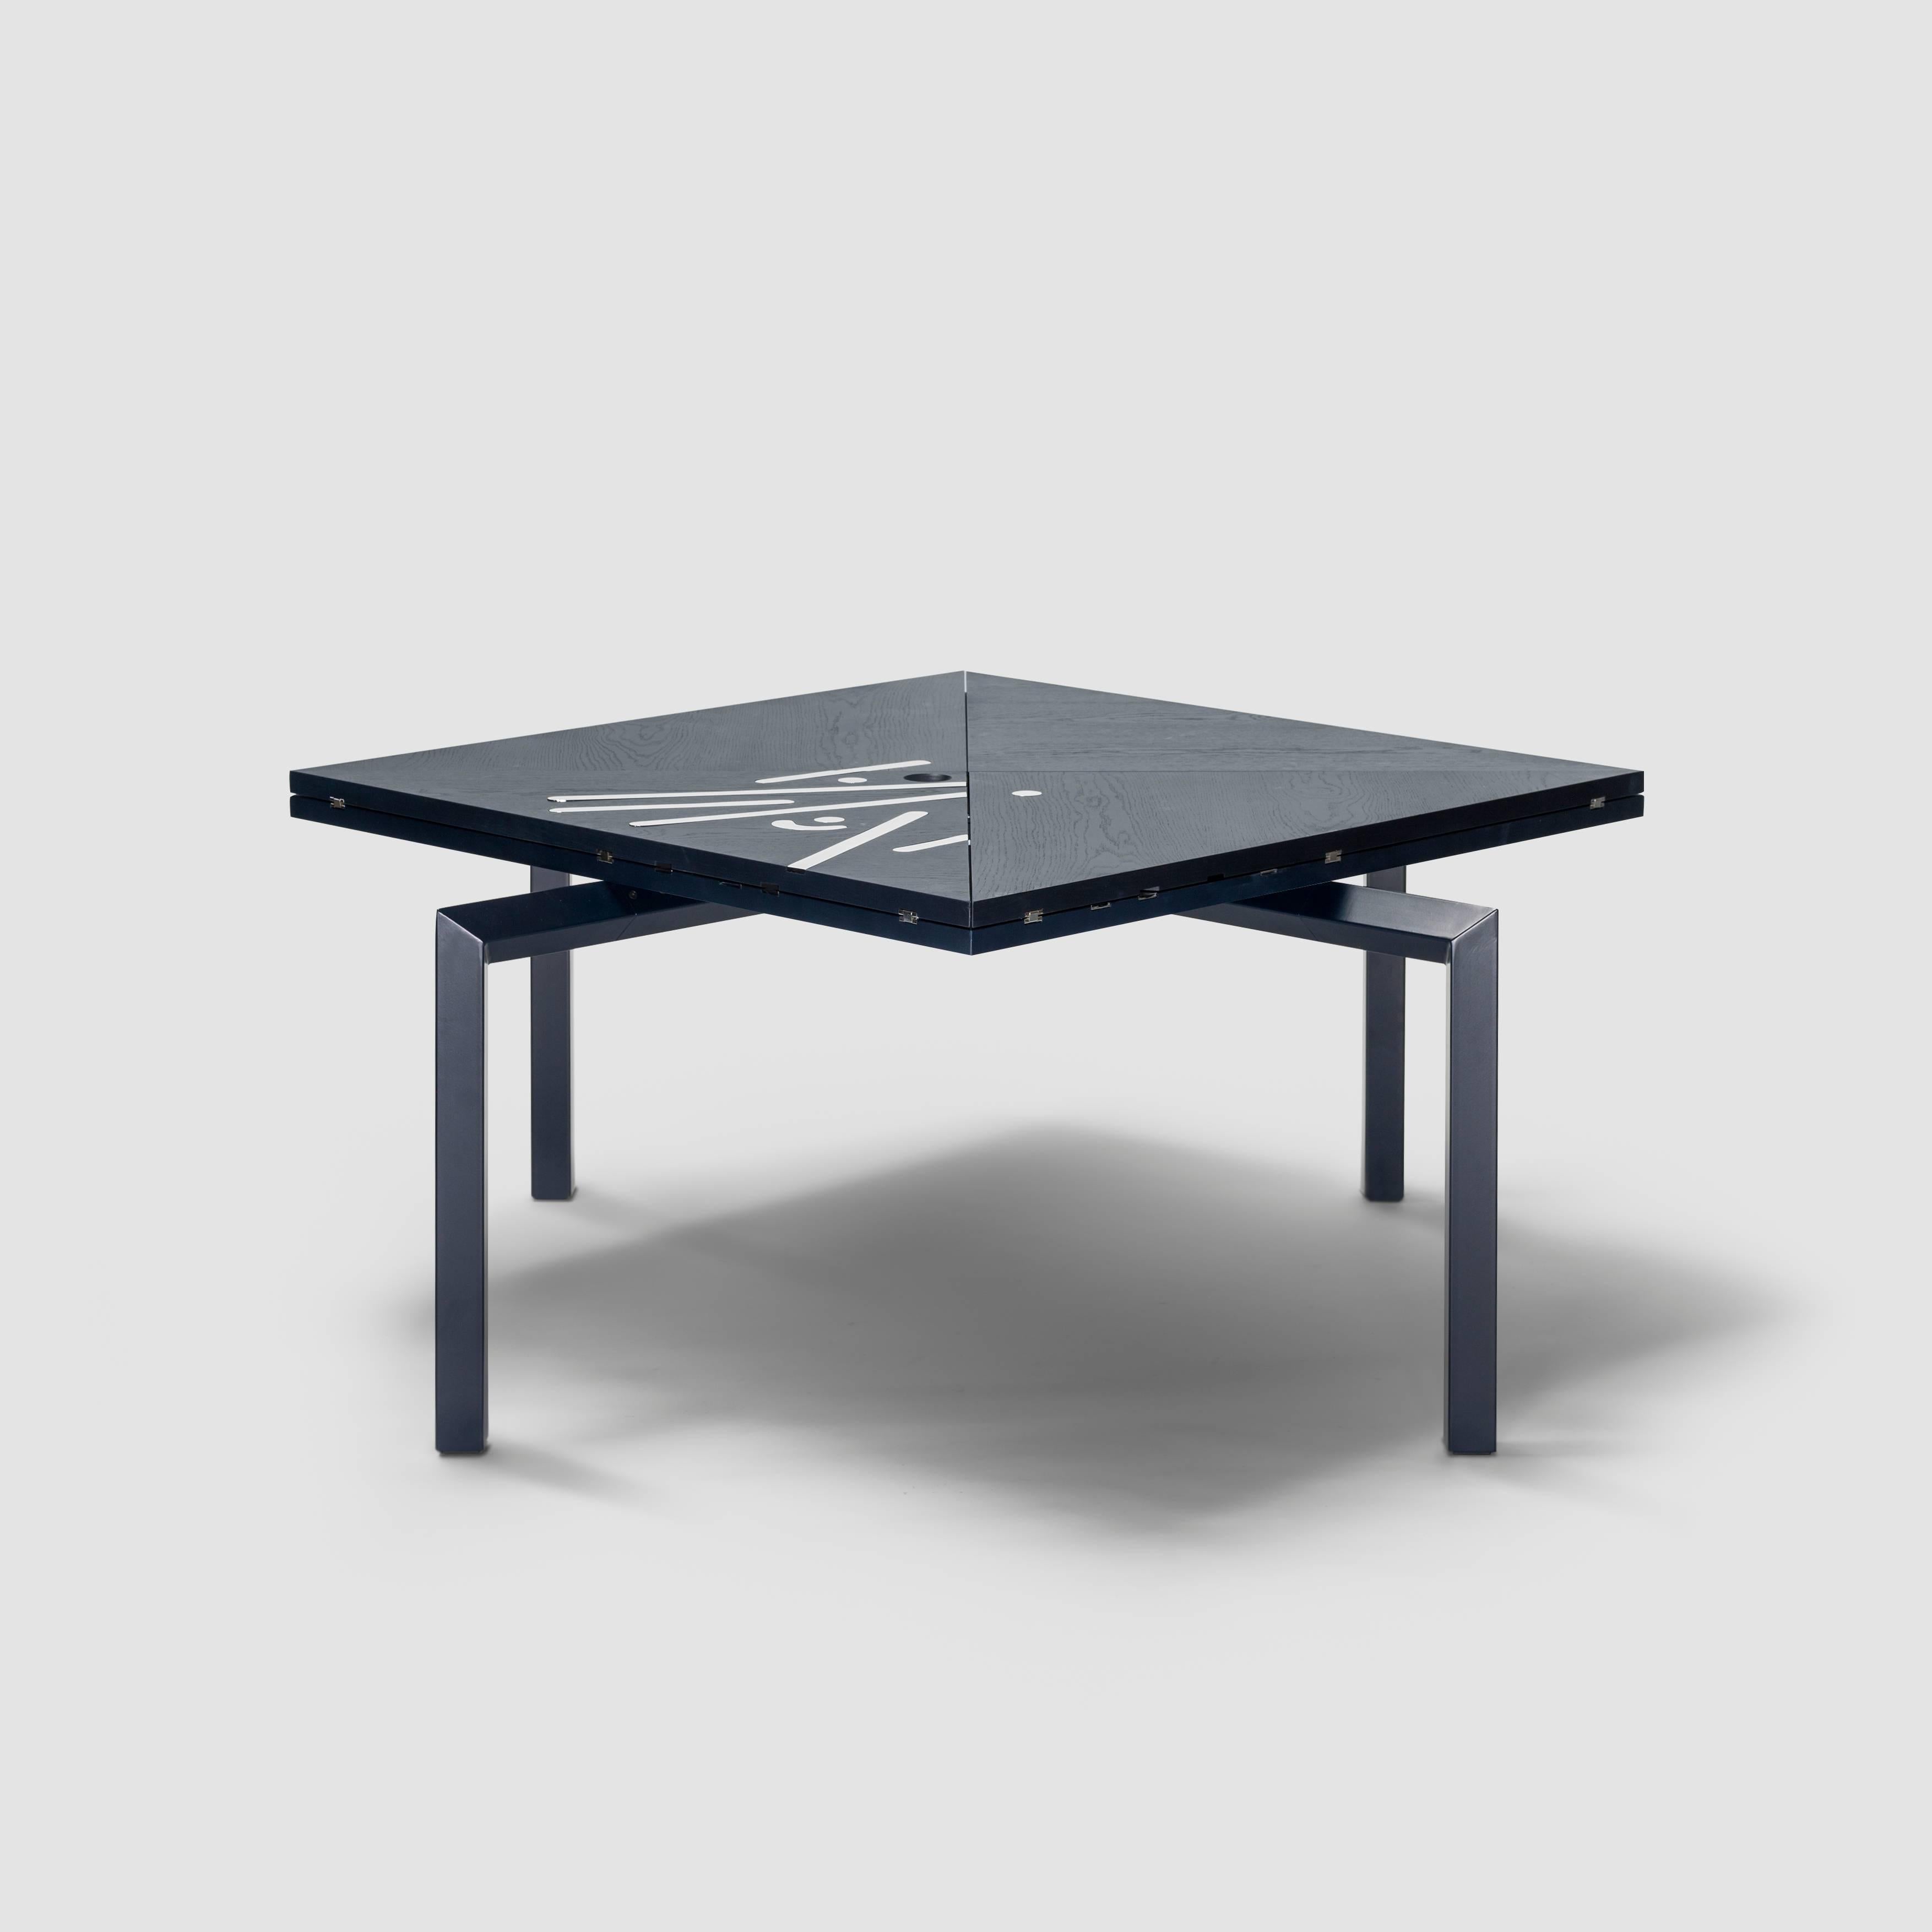 Table Alella conçue par Llus Clotet.

Édition limitée de 8 unités + 2 épreuves d'artiste + 2 prototypes.
DM, placage de chêne et teinture en bleu foncé RAL 5004.
Pieds dans un tube rectangulaire en fer laqué de la même couleur que le